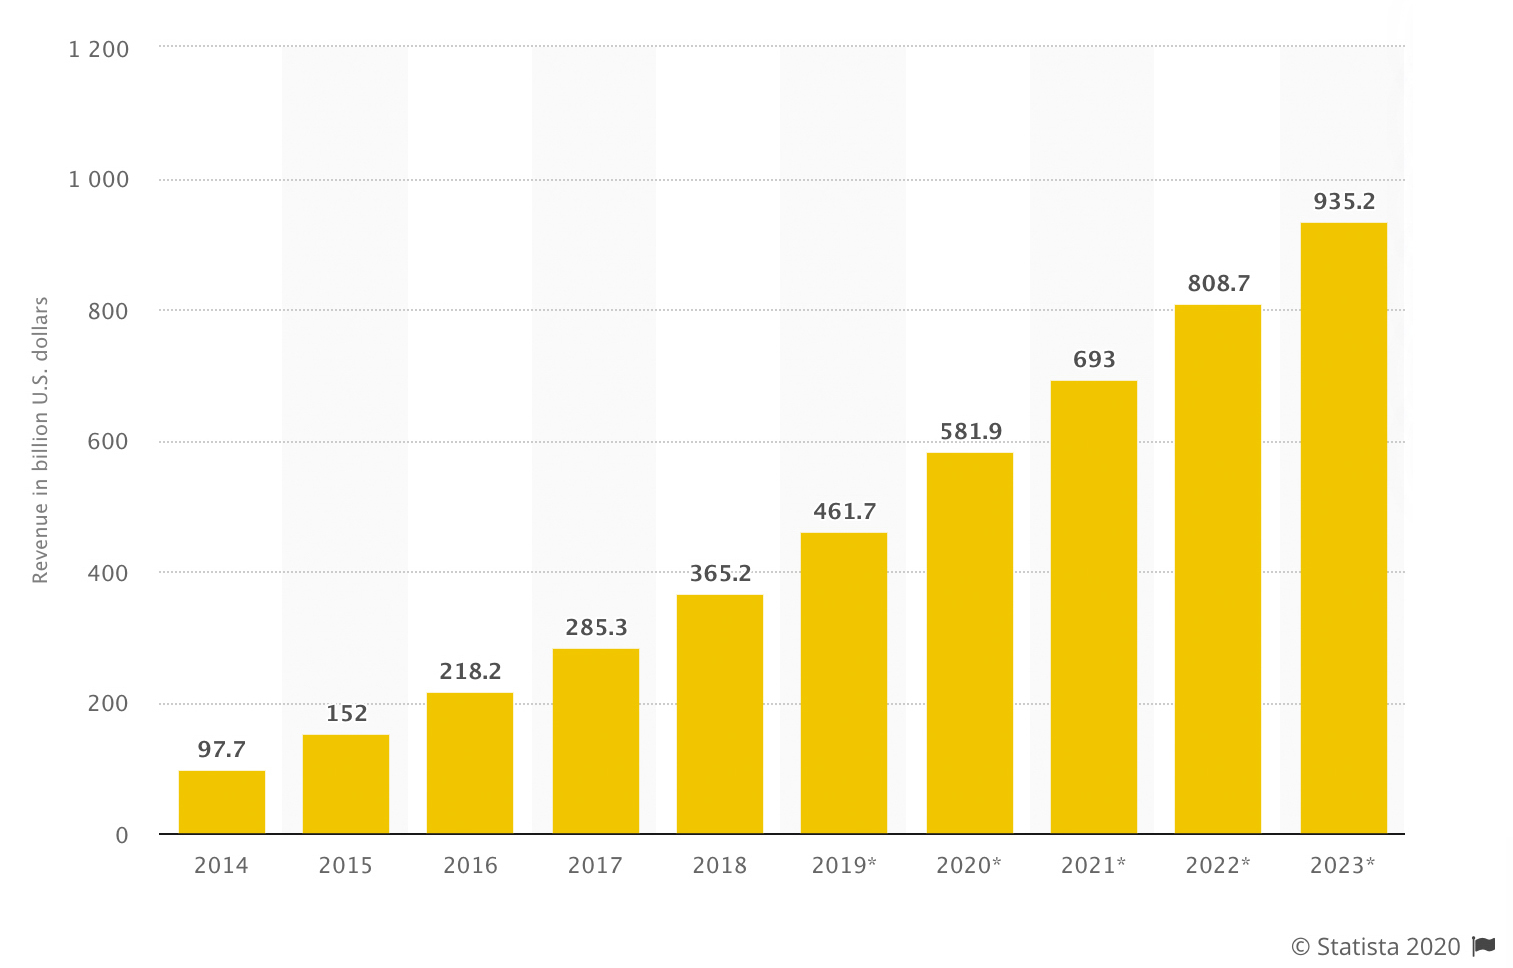 Total global mobile app revenues 2014-2023